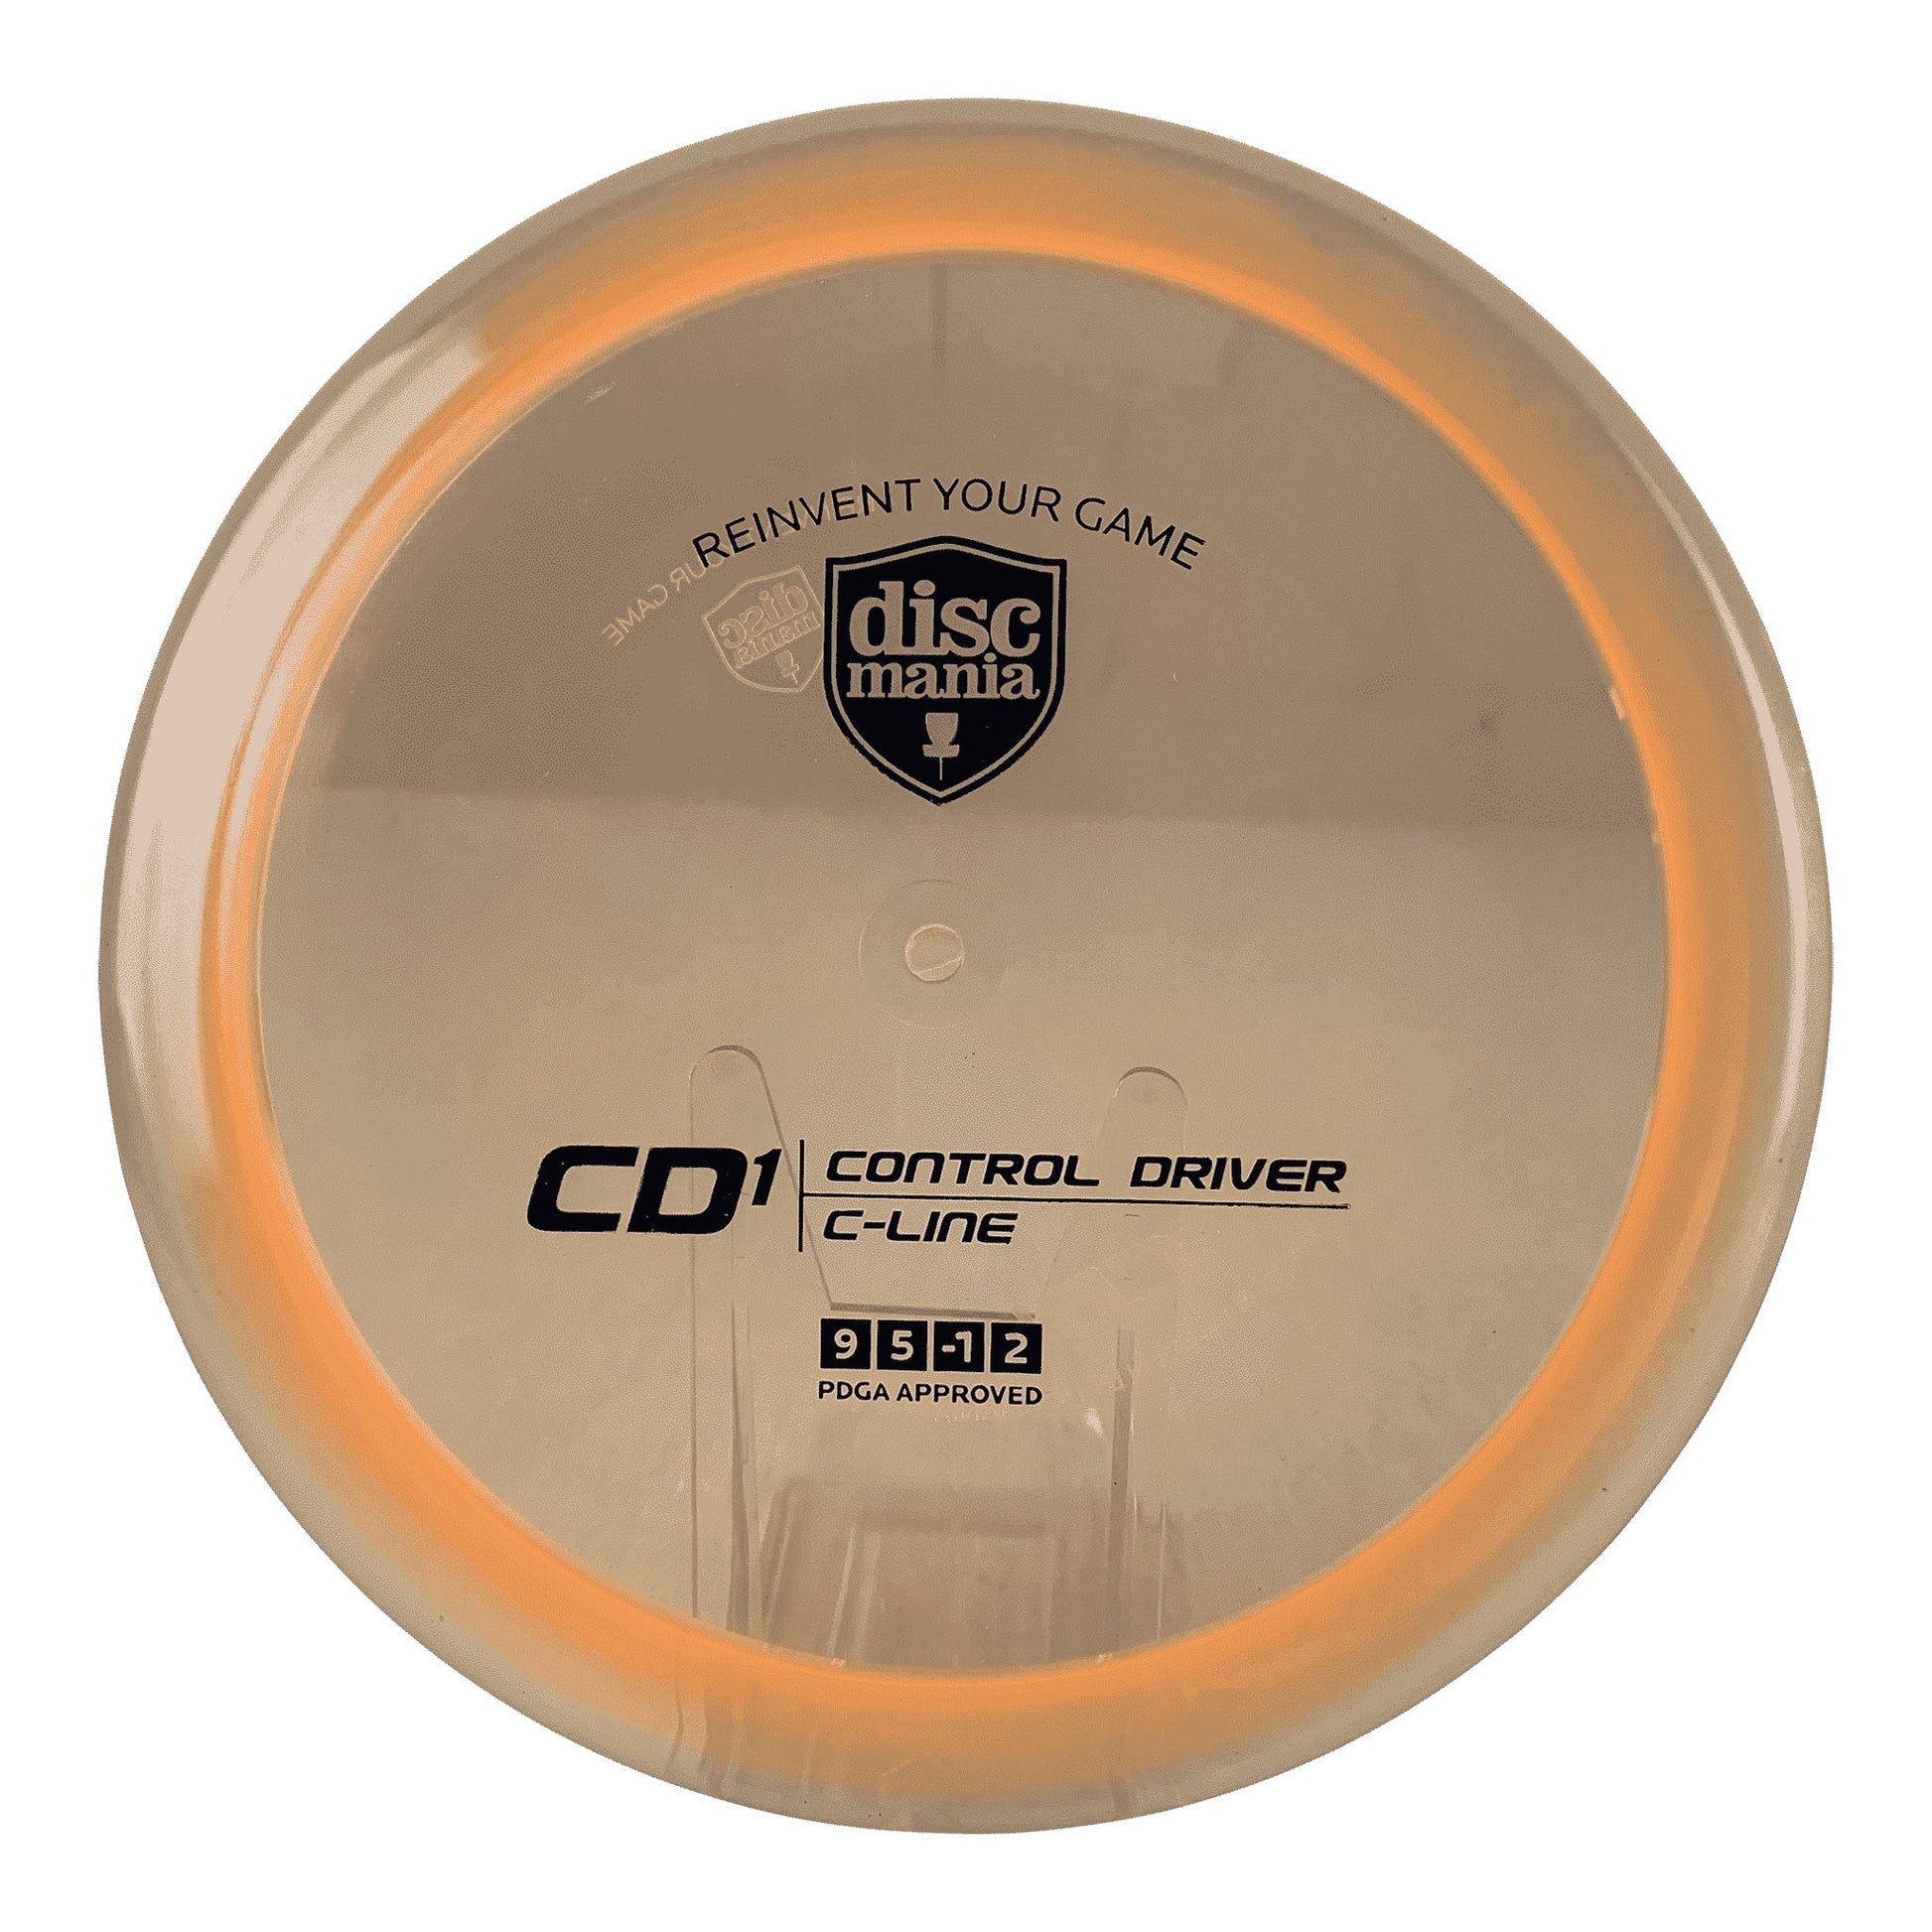 C-Line CD1 Disc Discmania orange 172 